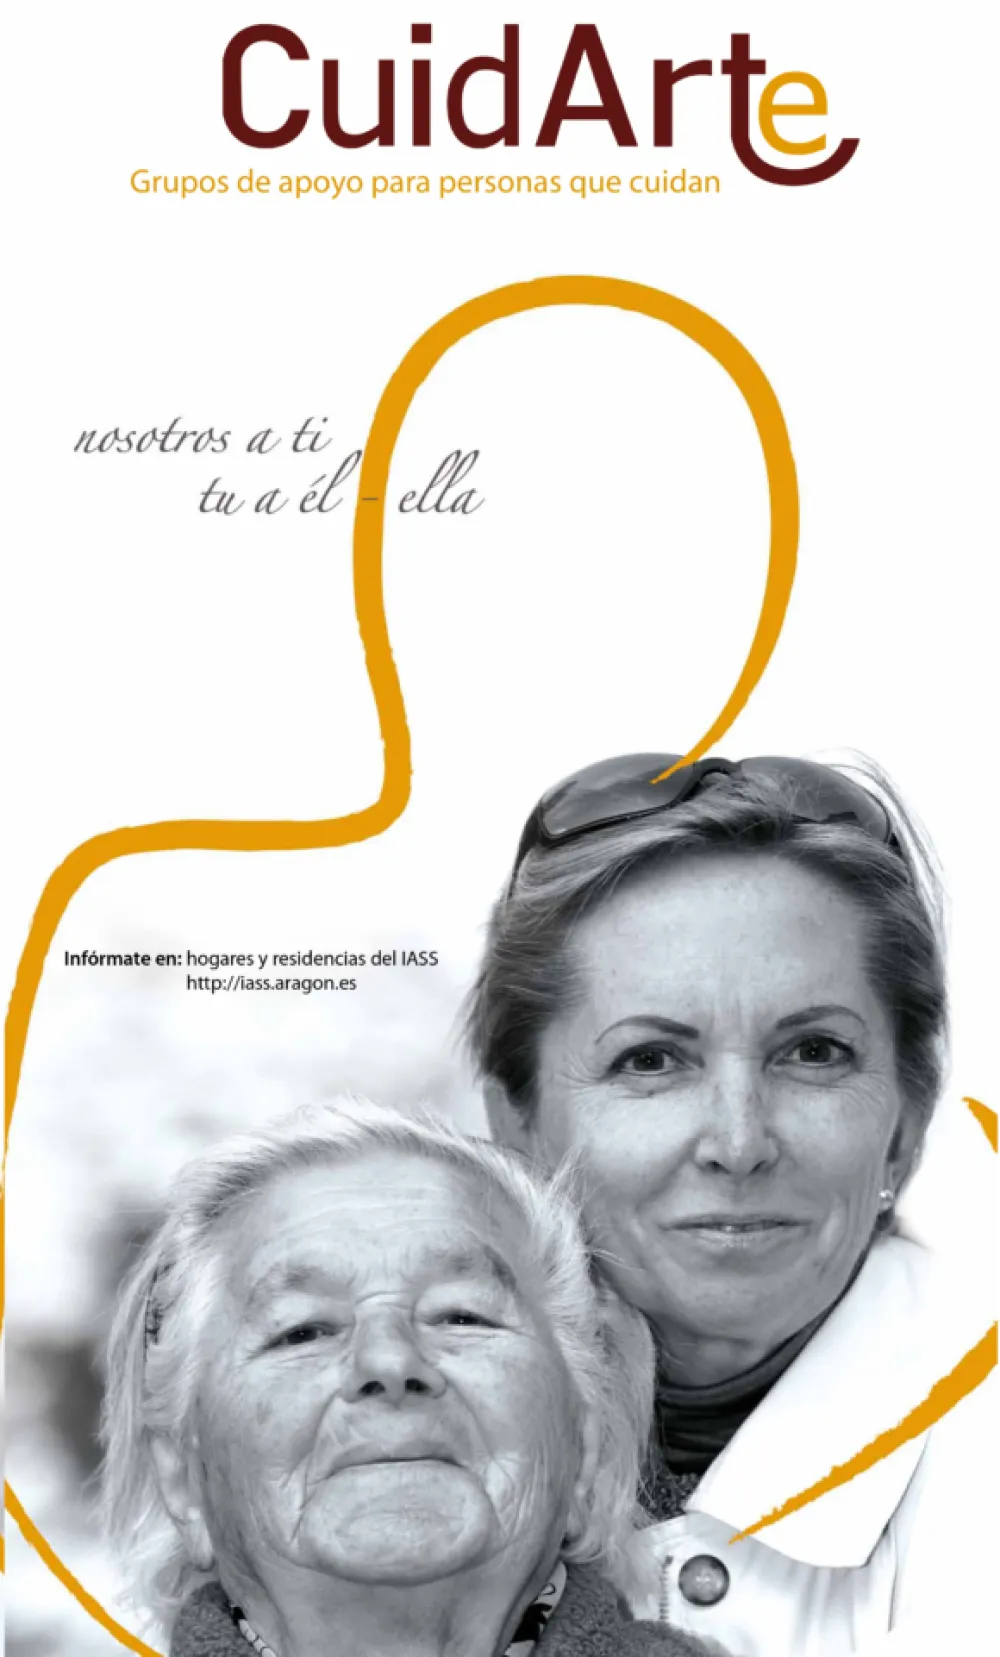 Foto del carted de cuidarte con una señora mayor y una señora joven sonriendo